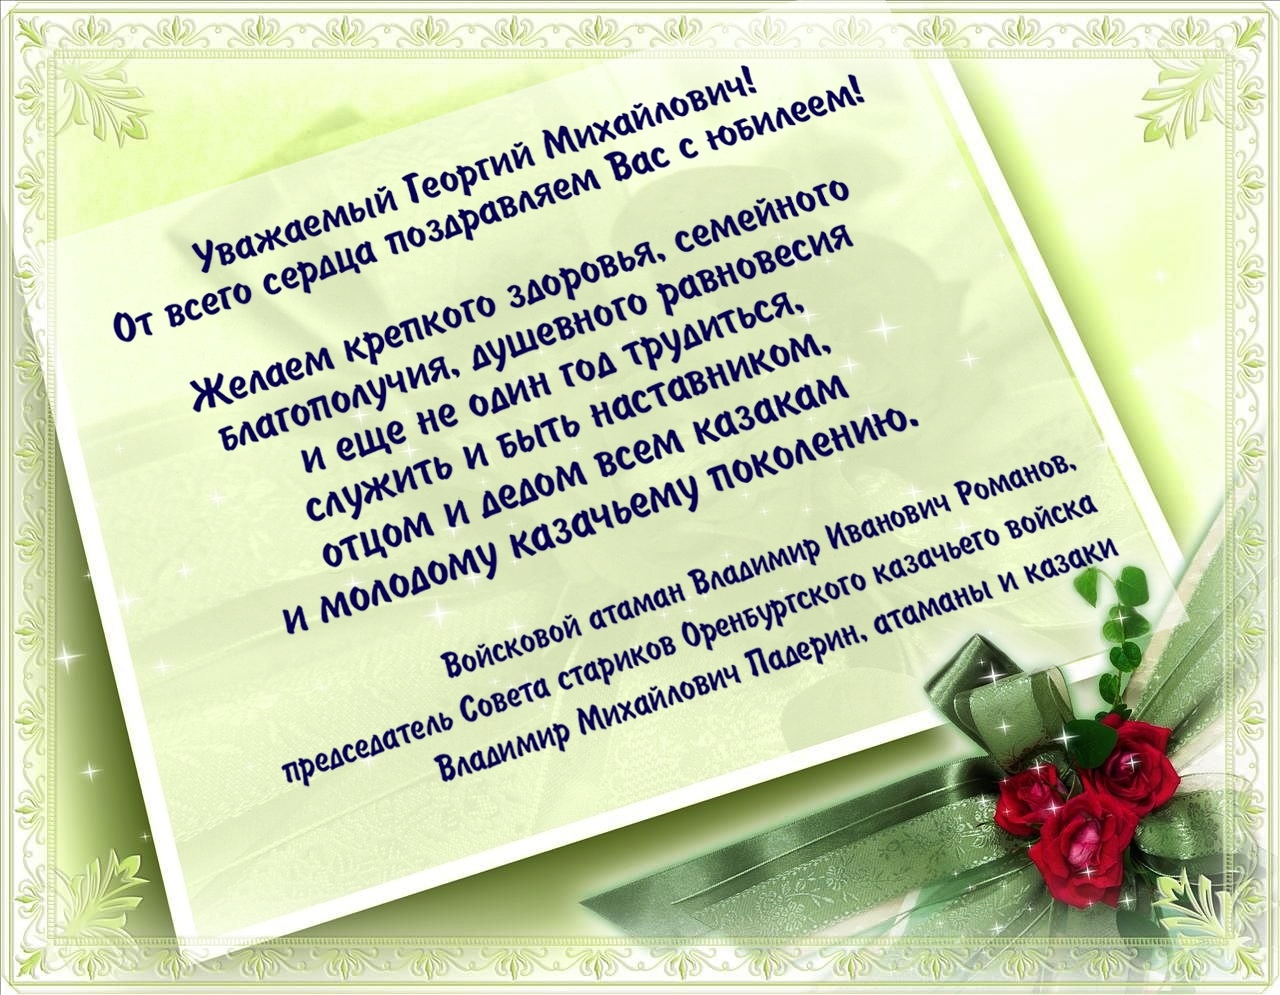 Поздравление председателя Совета стариков Второго отдела ОКВ Г.М. Стругова с днем рождения